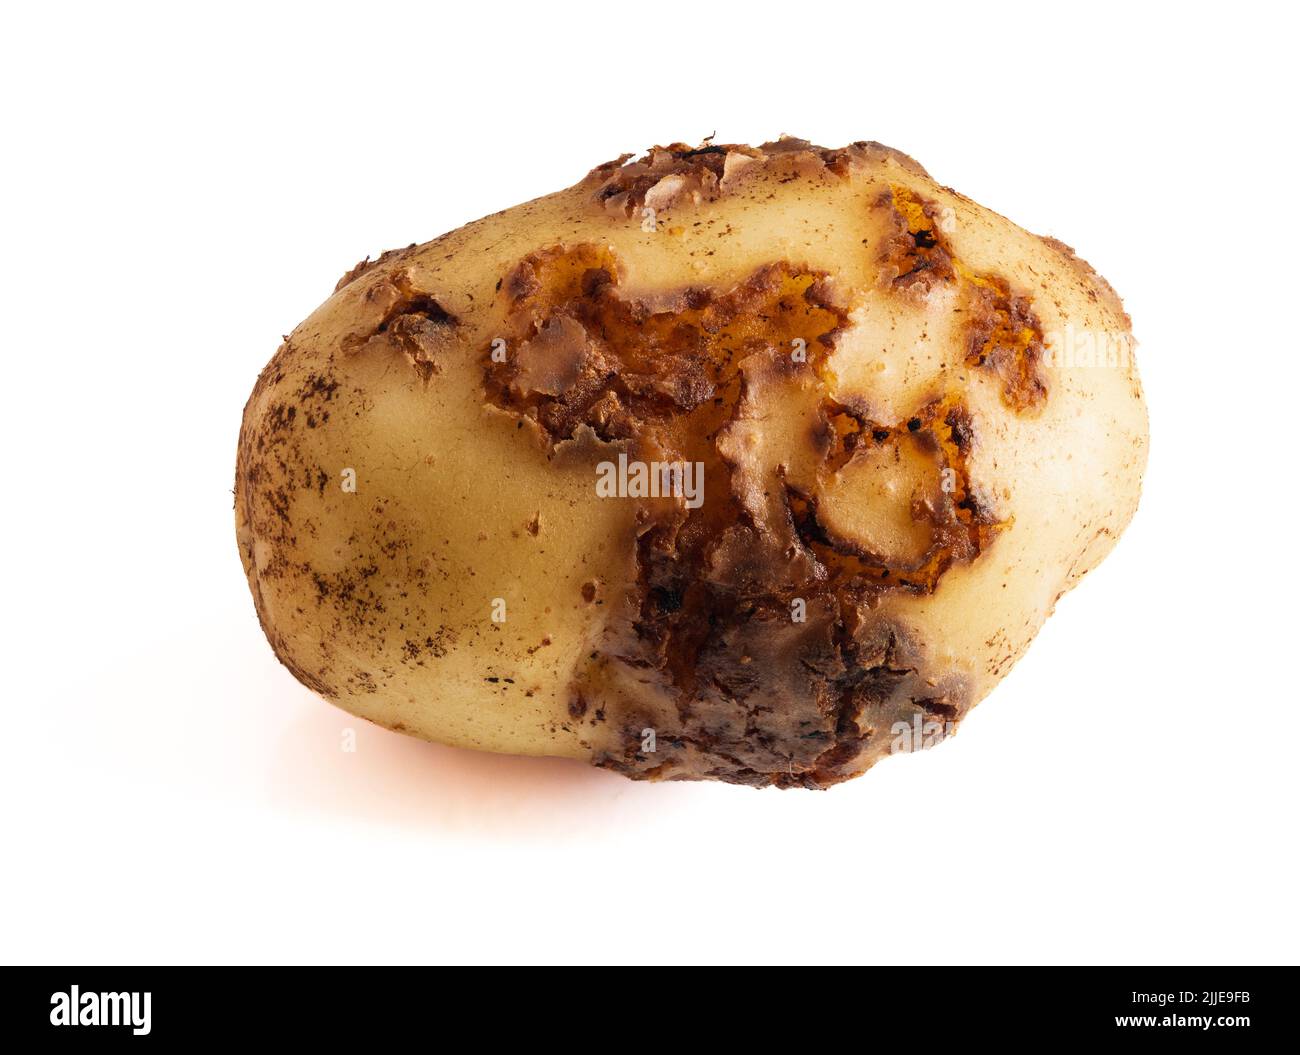 Warty Läsionen der bakteriellen Krankheit häufiger Schorf, Streptomyces Krätze, auf ersten frühen Kartoffel 'Swift'. Weißer Hintergrund Stockfoto